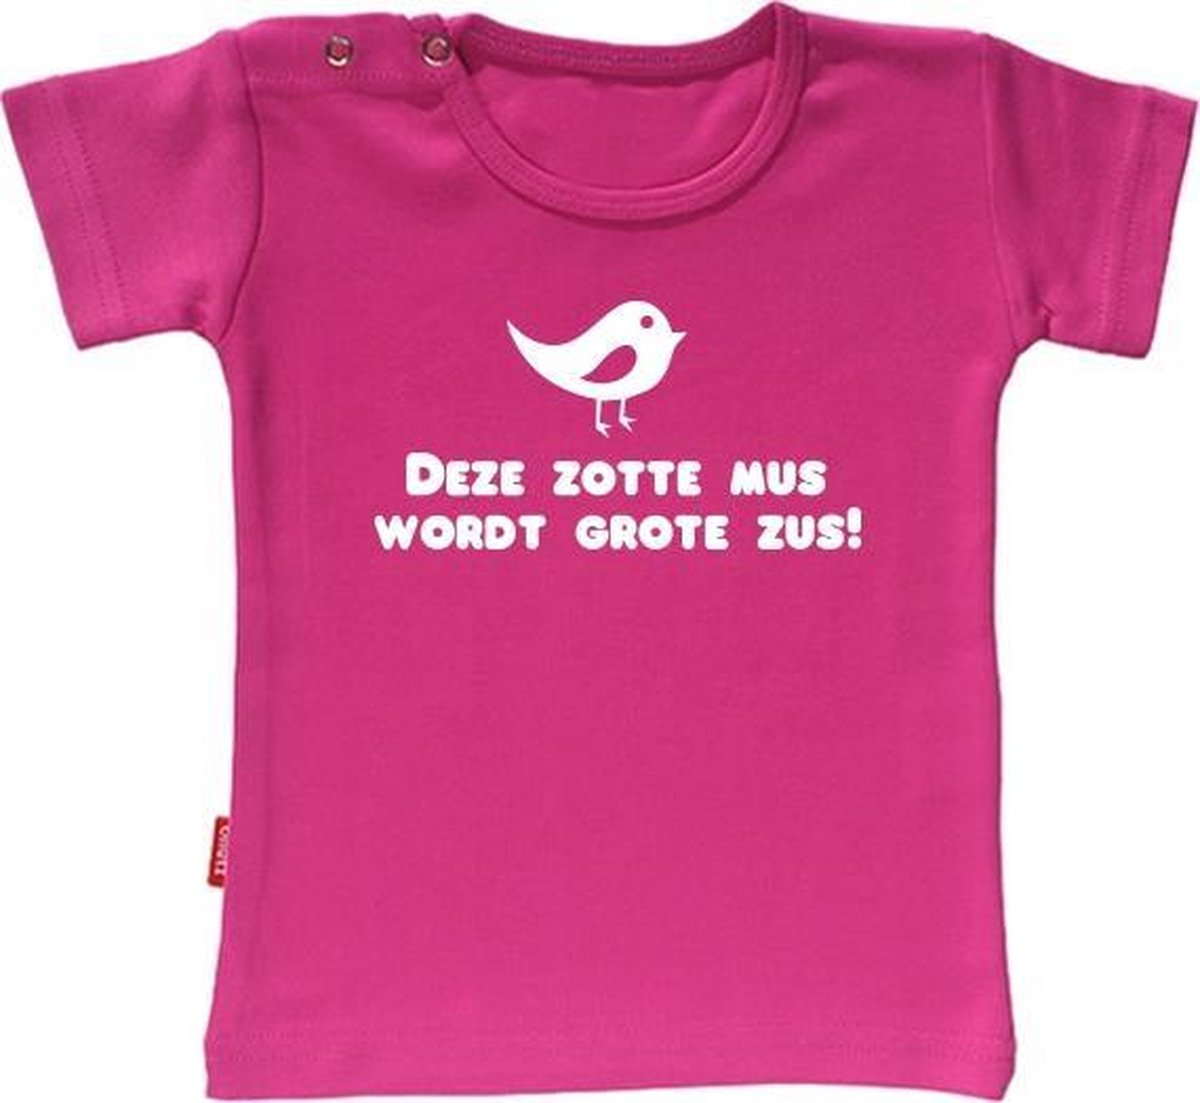 Babygoodies T-shirt Ik Word Grote Zus- Deze zotte mus wordt grote zus (Fuchsia 5-6j)